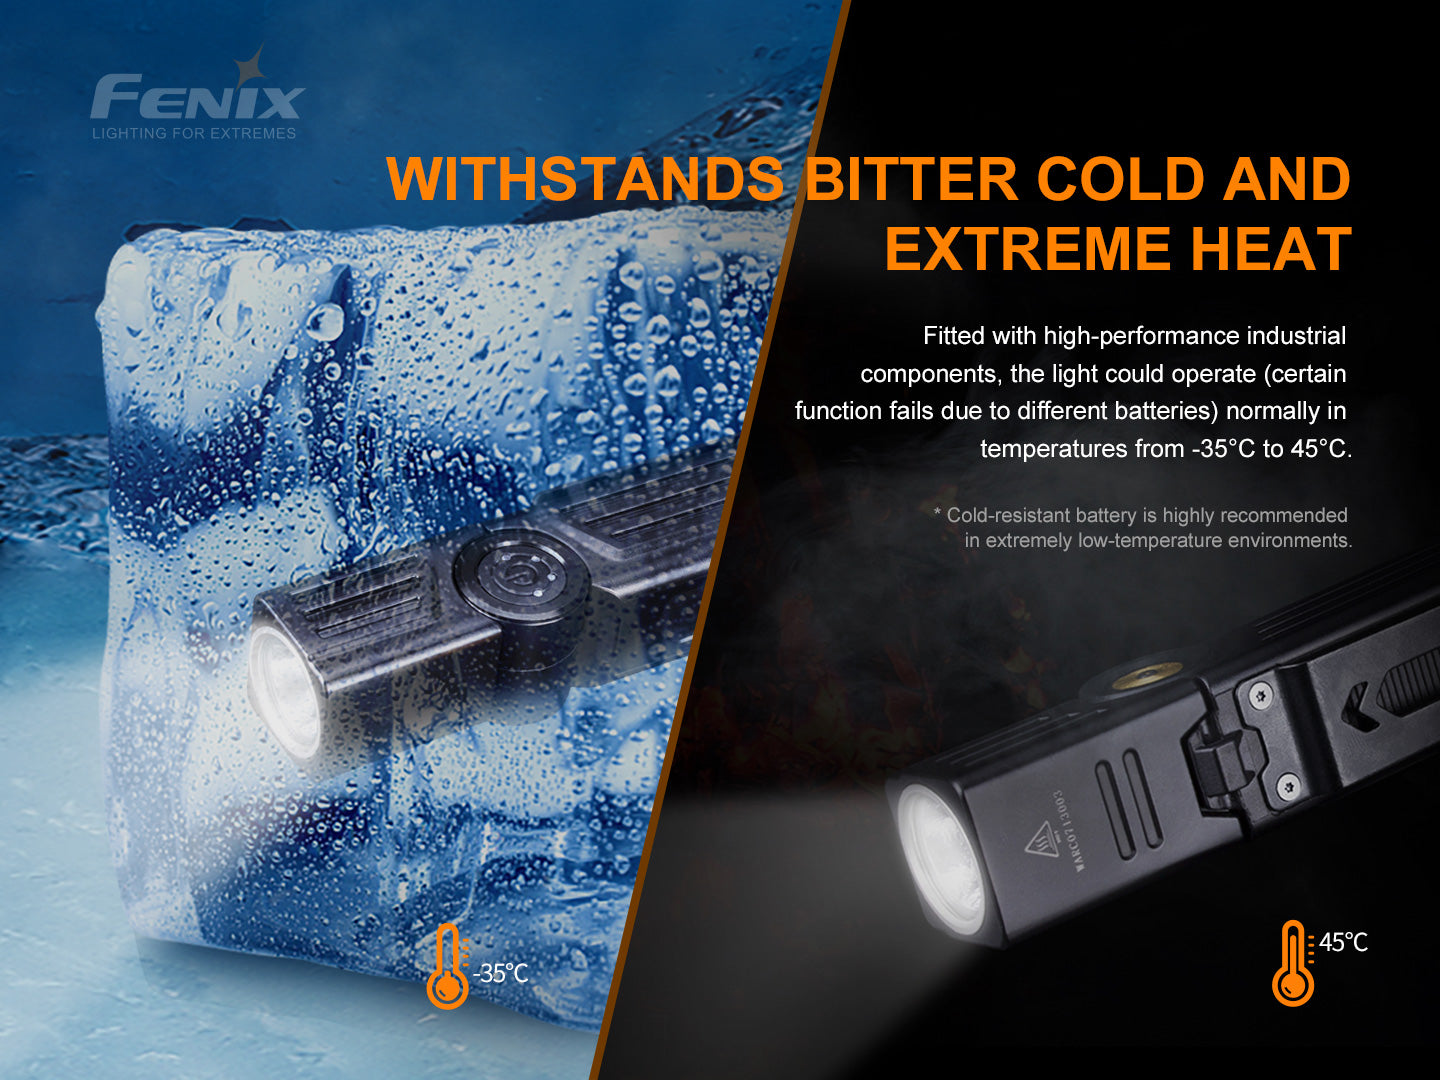 Fenix WT25R Adjustable Head & Magnetic Base Flashlight